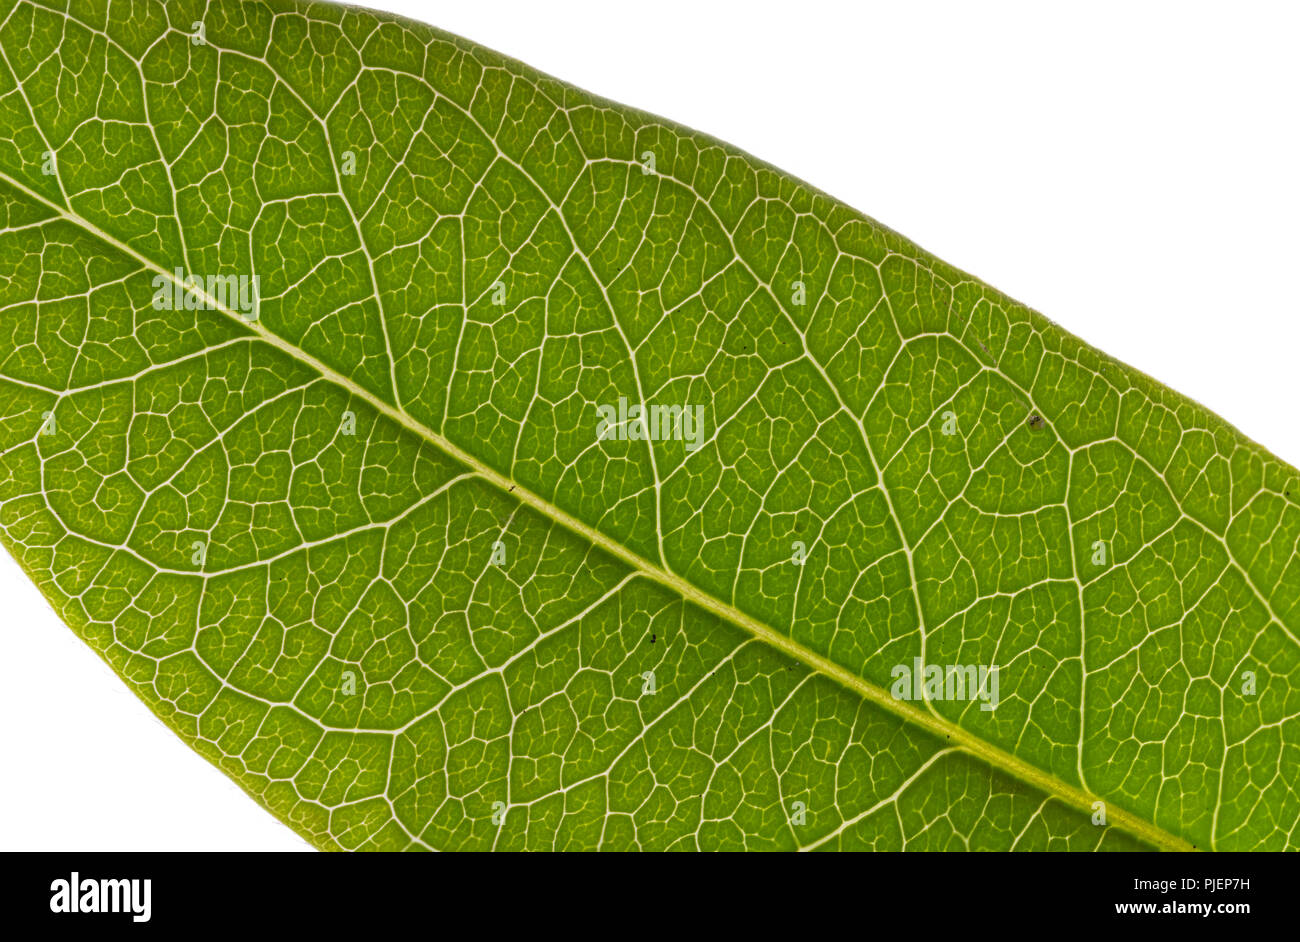 Makro Bild von einem grünen Blatt im Sommer vor einem weißen Hintergrund. Stockfoto